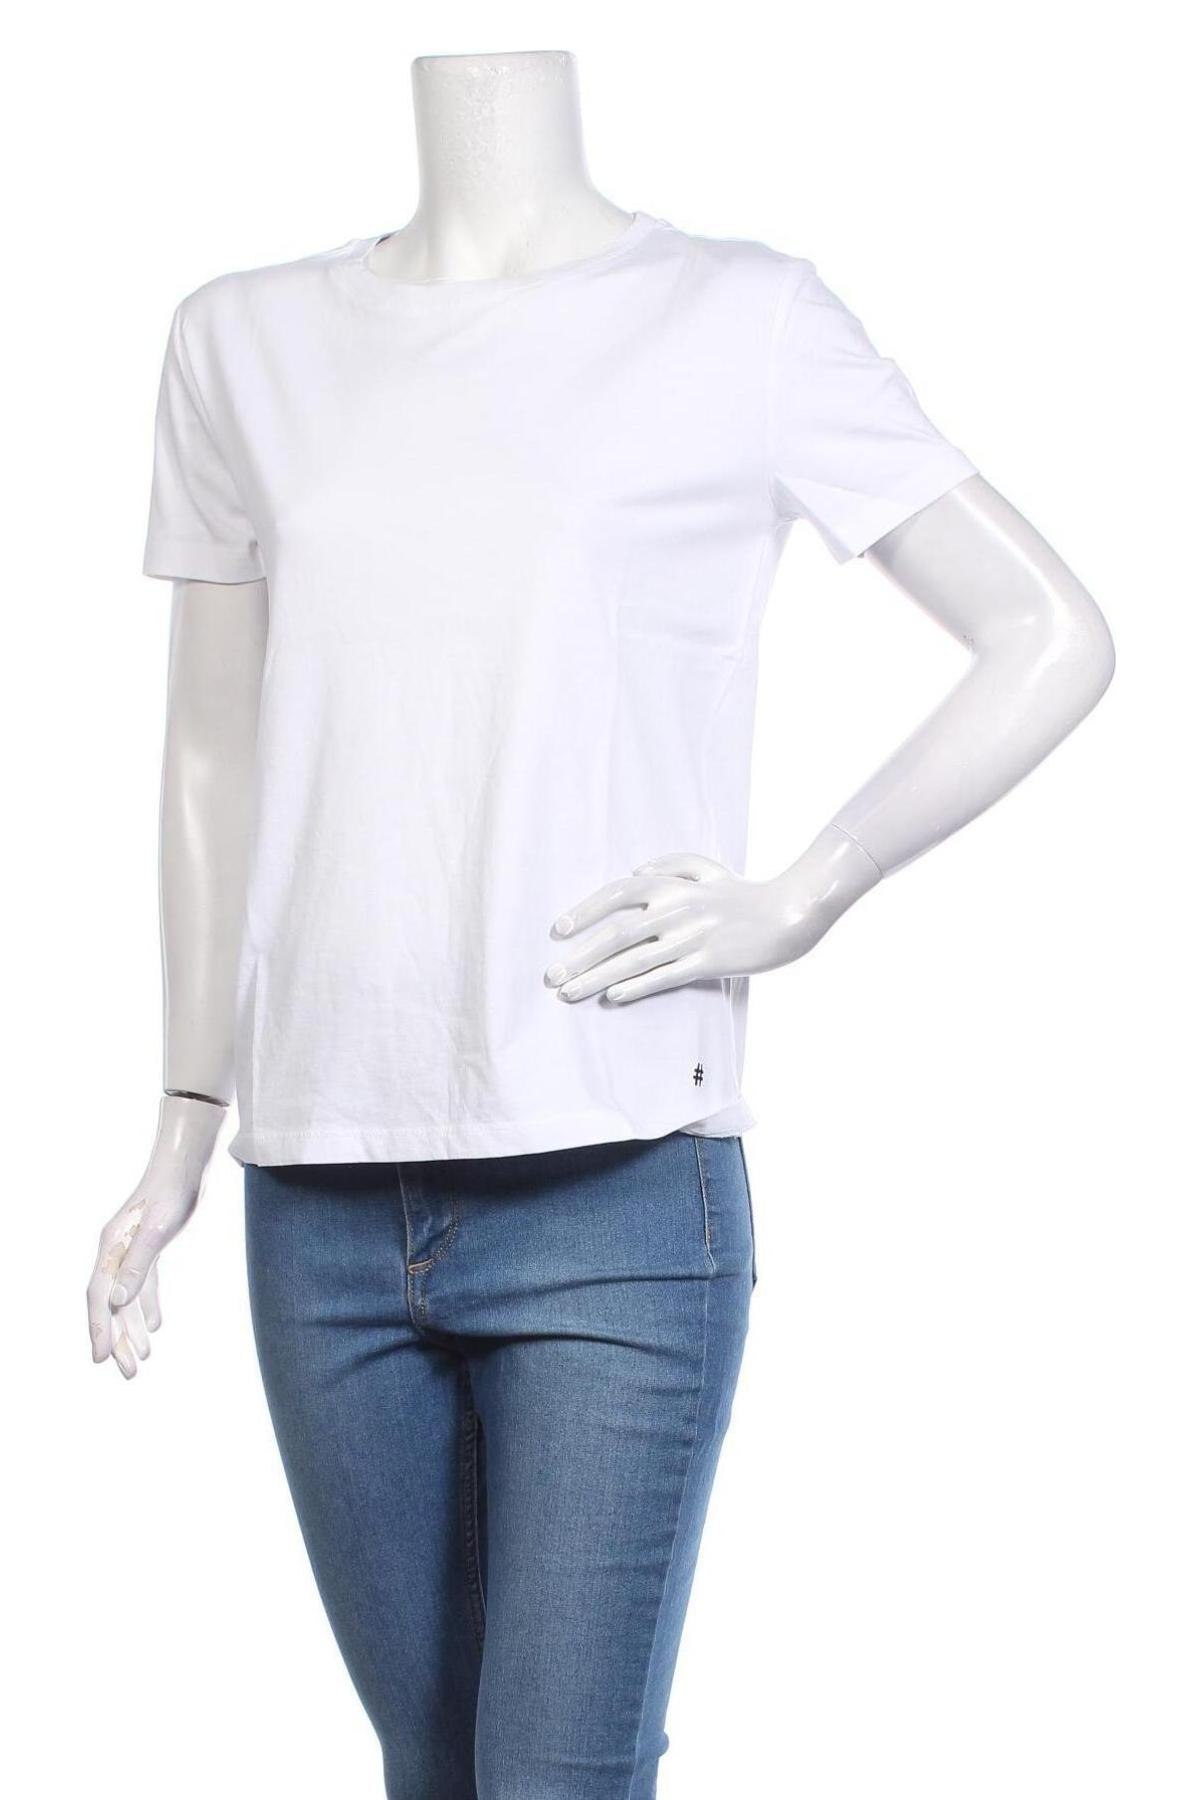 Γυναικείο t-shirt One More Story, Μέγεθος M, Χρώμα Λευκό, Βαμβάκι, Τιμή 12,16 €